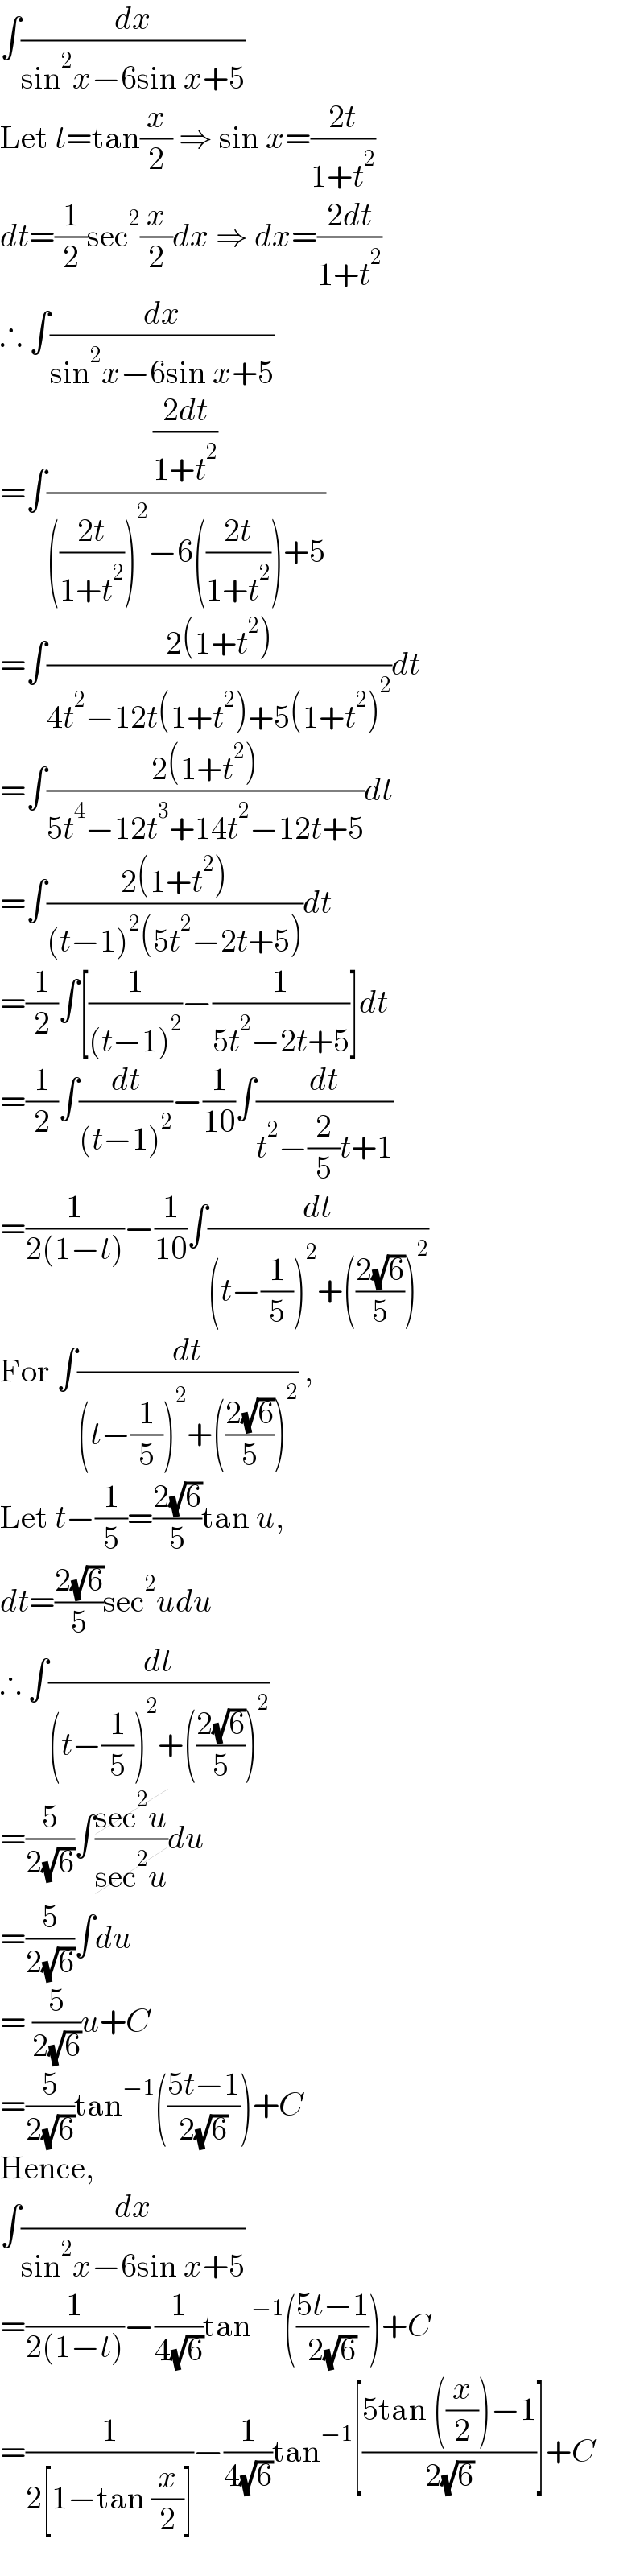 ∫(dx/(sin^2 x−6sin x+5))  Let t=tan(x/2) ⇒ sin x=((2t)/(1+t^2 ))  dt=(1/2)sec^2 (x/2)dx ⇒ dx=((2dt)/(1+t^2 ))  ∴ ∫(dx/(sin^2 x−6sin x+5))  =∫(((2dt)/(1+t^2 ))/((((2t)/(1+t^2 )))^2 −6(((2t)/(1+t^2 )))+5))  =∫((2(1+t^2 ))/(4t^2 −12t(1+t^2 )+5(1+t^2 )^2 ))dt  =∫((2(1+t^2 ))/(5t^4 −12t^3 +14t^2 −12t+5))dt  =∫((2(1+t^2 ))/((t−1)^2 (5t^2 −2t+5)))dt  =(1/2)∫[(1/((t−1)^2 ))−(1/(5t^2 −2t+5))]dt  =(1/2)∫(dt/((t−1)^2 ))−(1/(10))∫(dt/(t^2 −(2/5)t+1))  =(1/(2(1−t)))−(1/(10))∫(dt/((t−(1/5))^2 +(((2(√6))/5))^2 ))  For ∫(dt/((t−(1/5))^2 +(((2(√6))/5))^2 )) ,  Let t−(1/5)=((2(√6))/5)tan u,  dt=((2(√6))/5)sec^2 udu  ∴ ∫(dt/((t−(1/5))^2 +(((2(√6))/5))^2 ))  =(5/(2(√6)))∫((sec^2 u)/(sec^2 u))du  =(5/(2(√6)))∫du  = (5/(2(√6)))u+C  =(5/(2(√6)))tan^(−1) (((5t−1)/(2(√6))))+C  Hence,  ∫(dx/(sin^2 x−6sin x+5))  =(1/(2(1−t)))−(1/(4(√6)))tan^(−1) (((5t−1)/(2(√6))))+C  =(1/(2[1−tan (x/2)]))−(1/(4(√6)))tan^(−1) [((5tan ((x/2))−1)/(2(√6)))]+C  